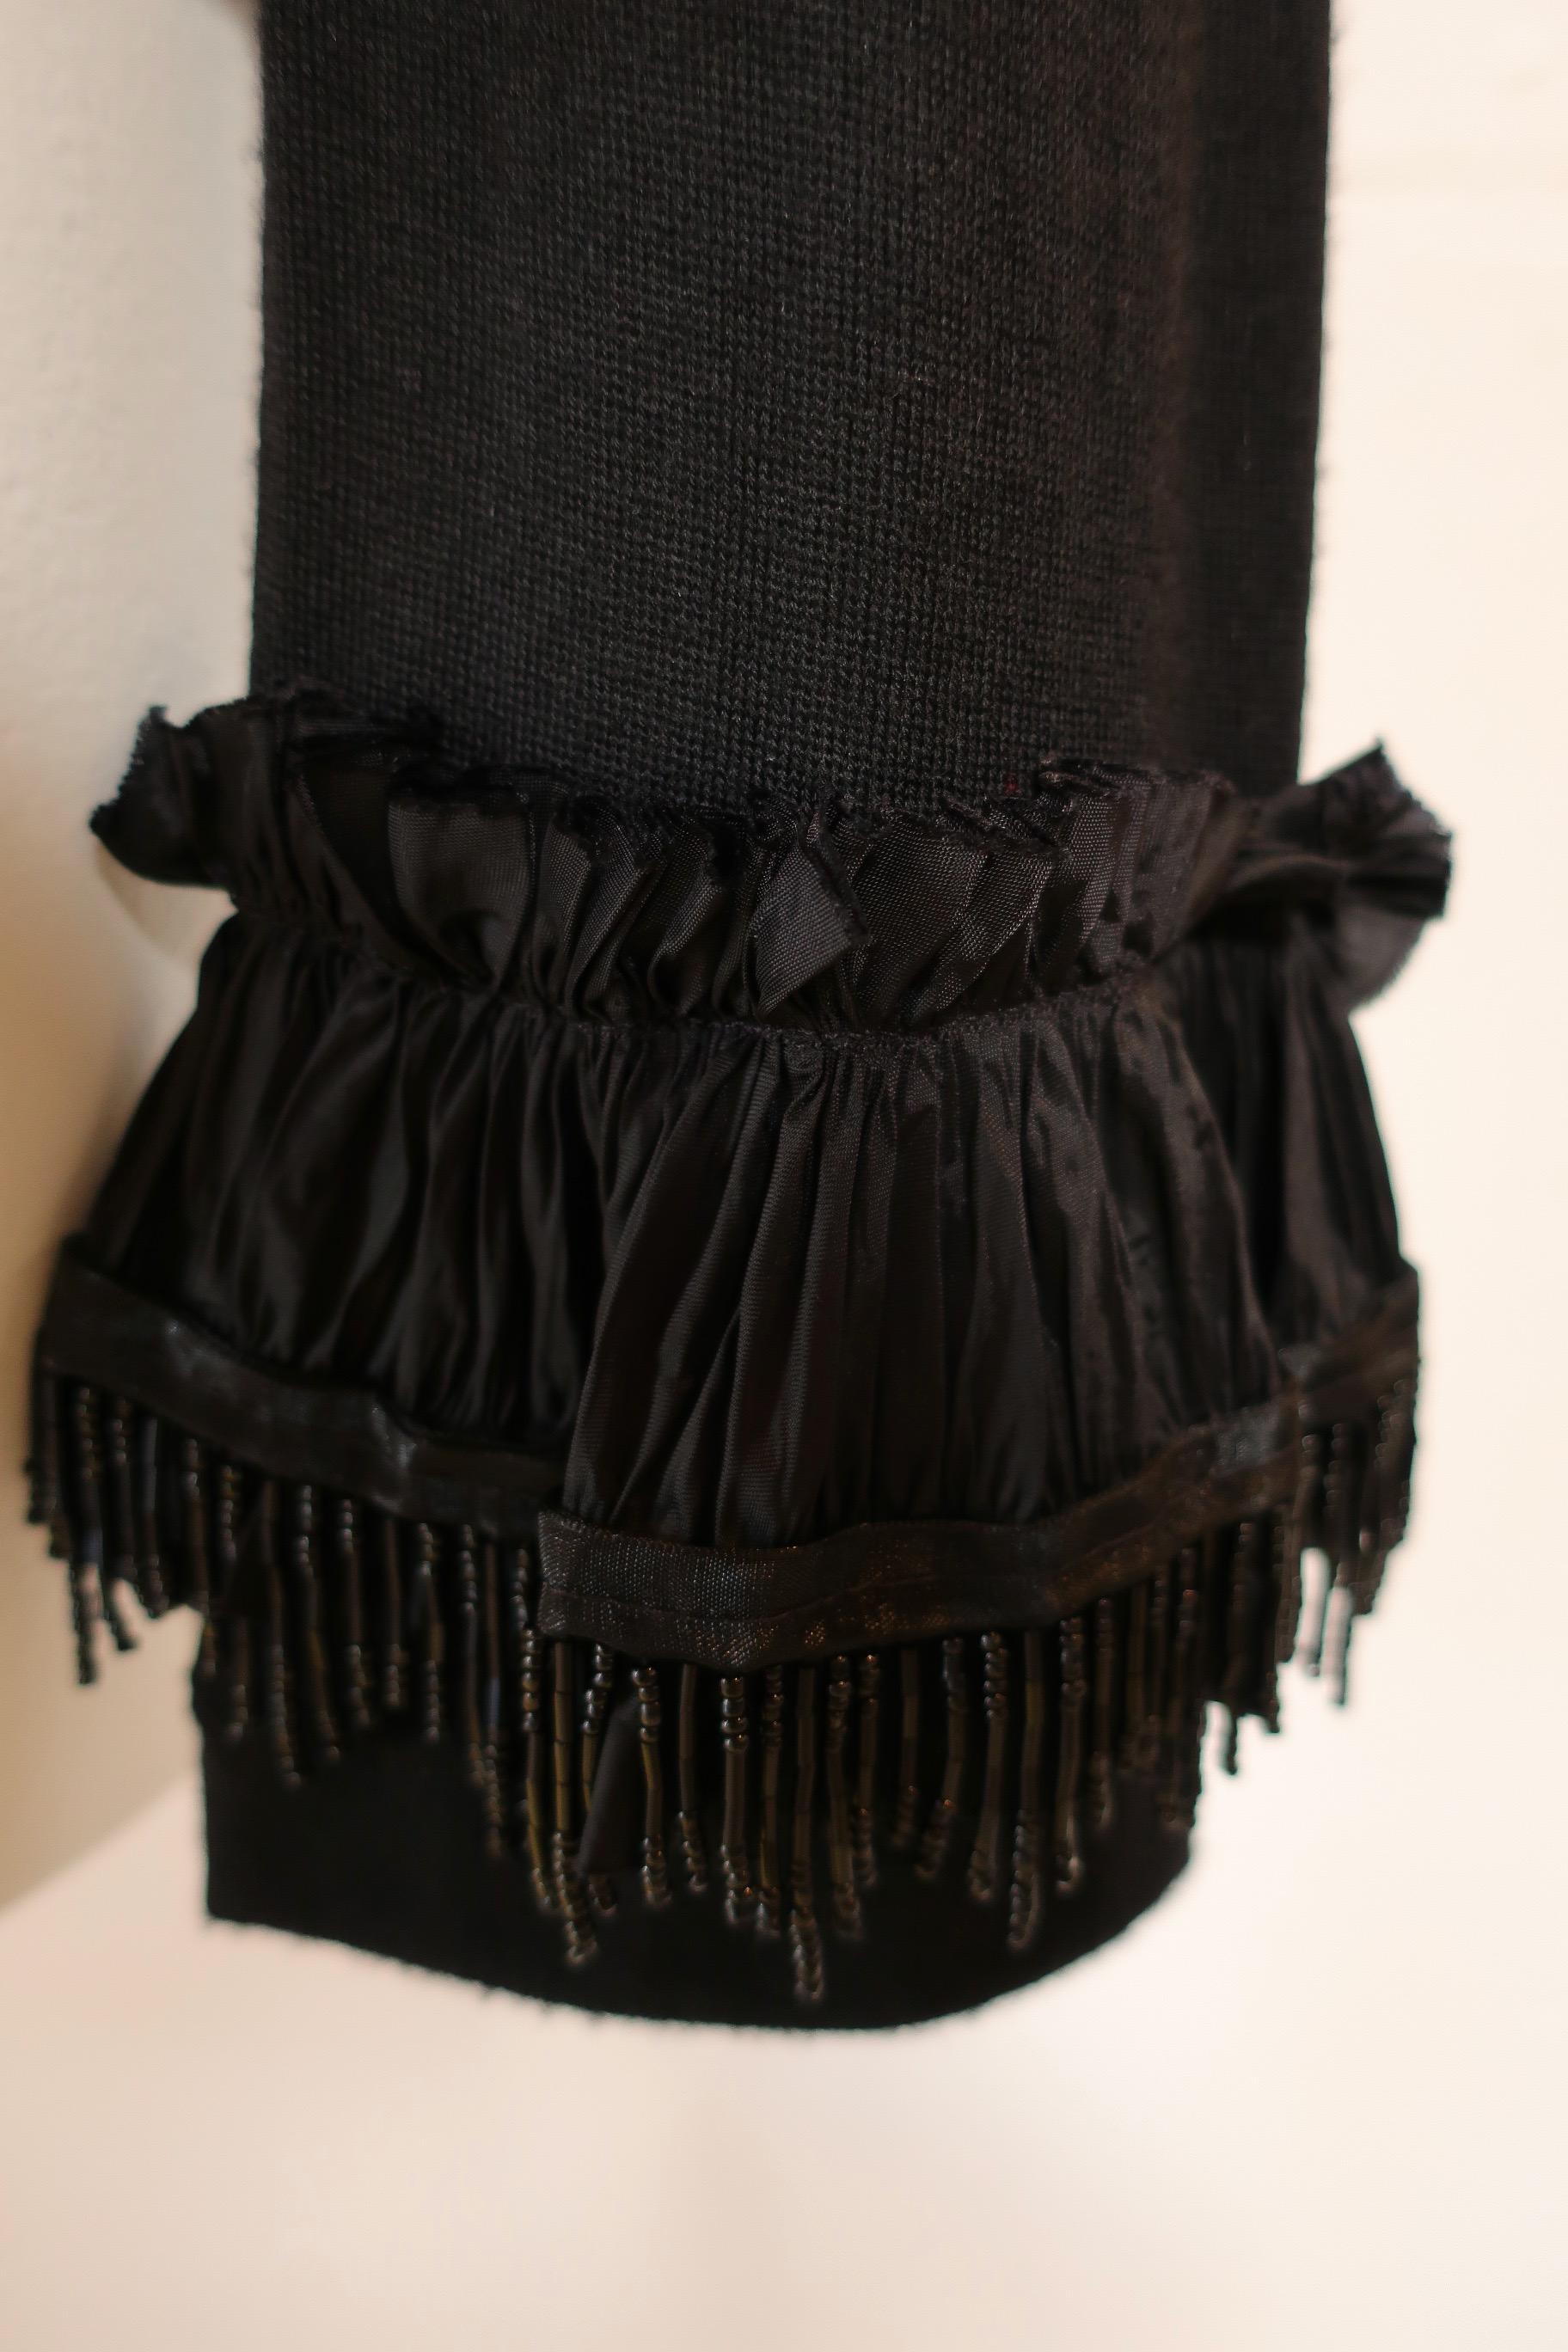 Comme des Garçons Black Sequin Embellished Long Sleeve Top For Sale 5